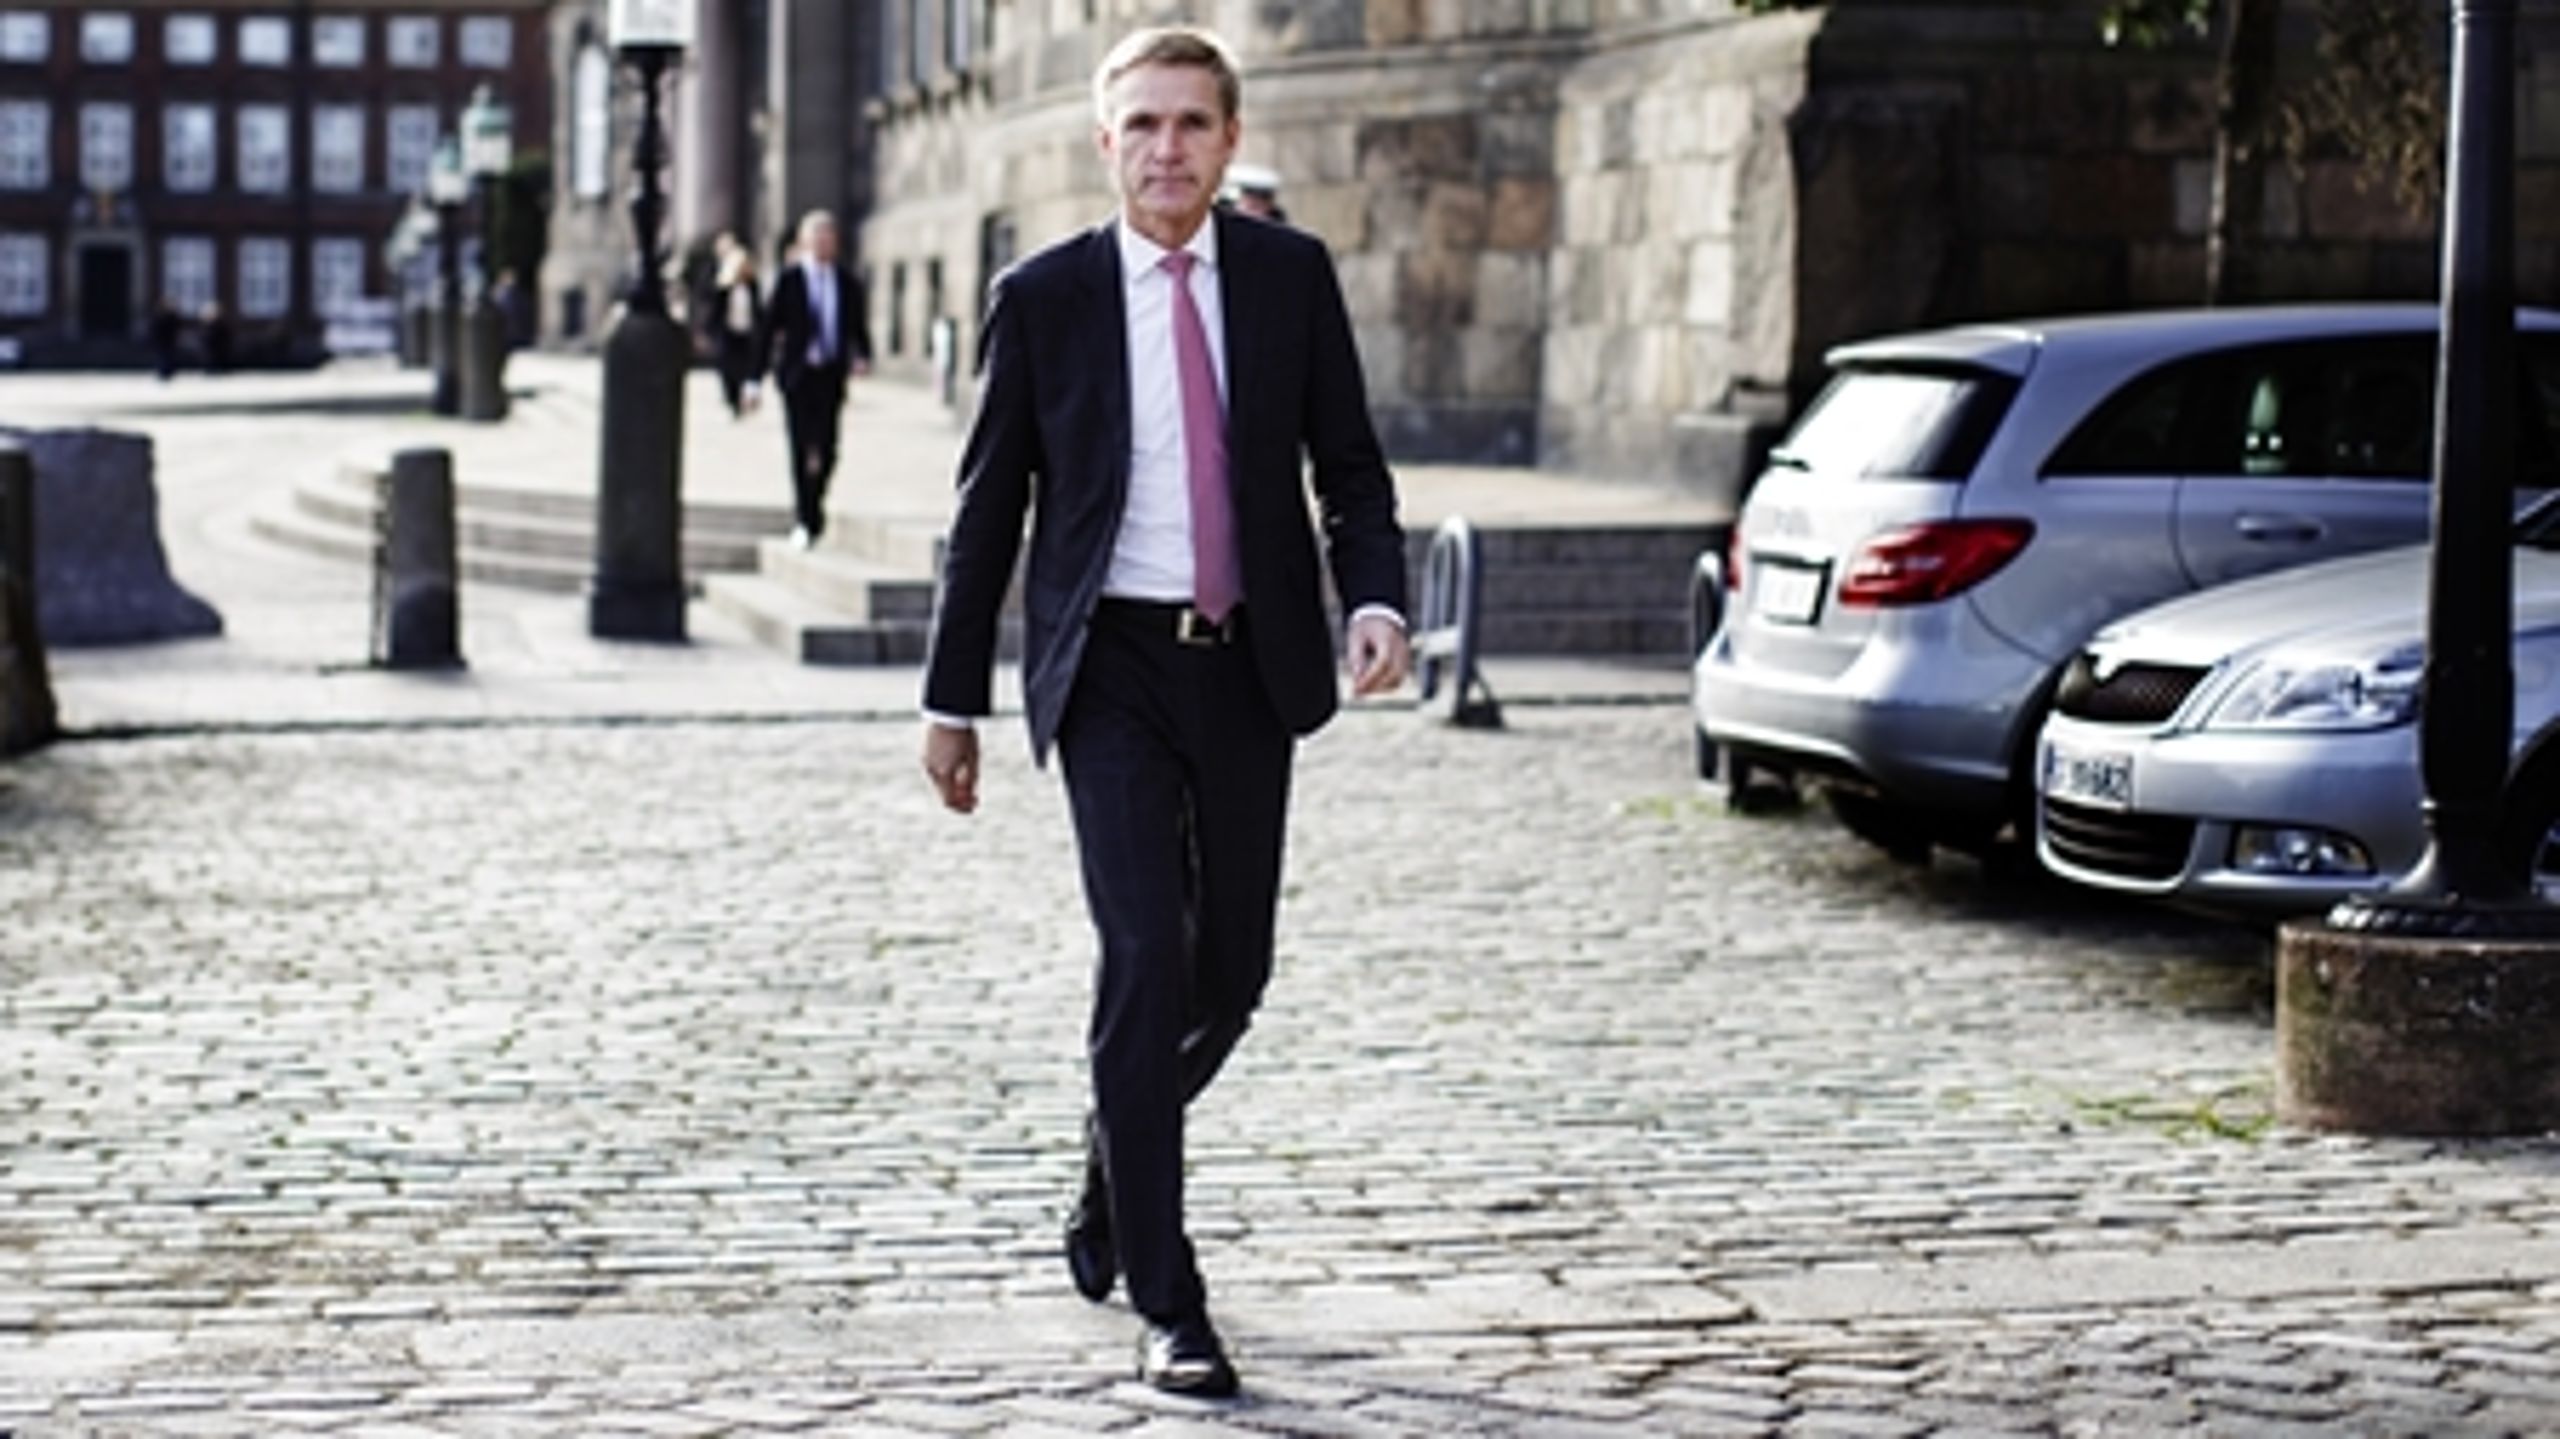 Dansk Folkepartis formand Kristian Thulesen Dahl vil skabe større omfordeling mellem kommunerne og mere ensartet service ved at afskaffe kommunernes skatteudskrivningsret.